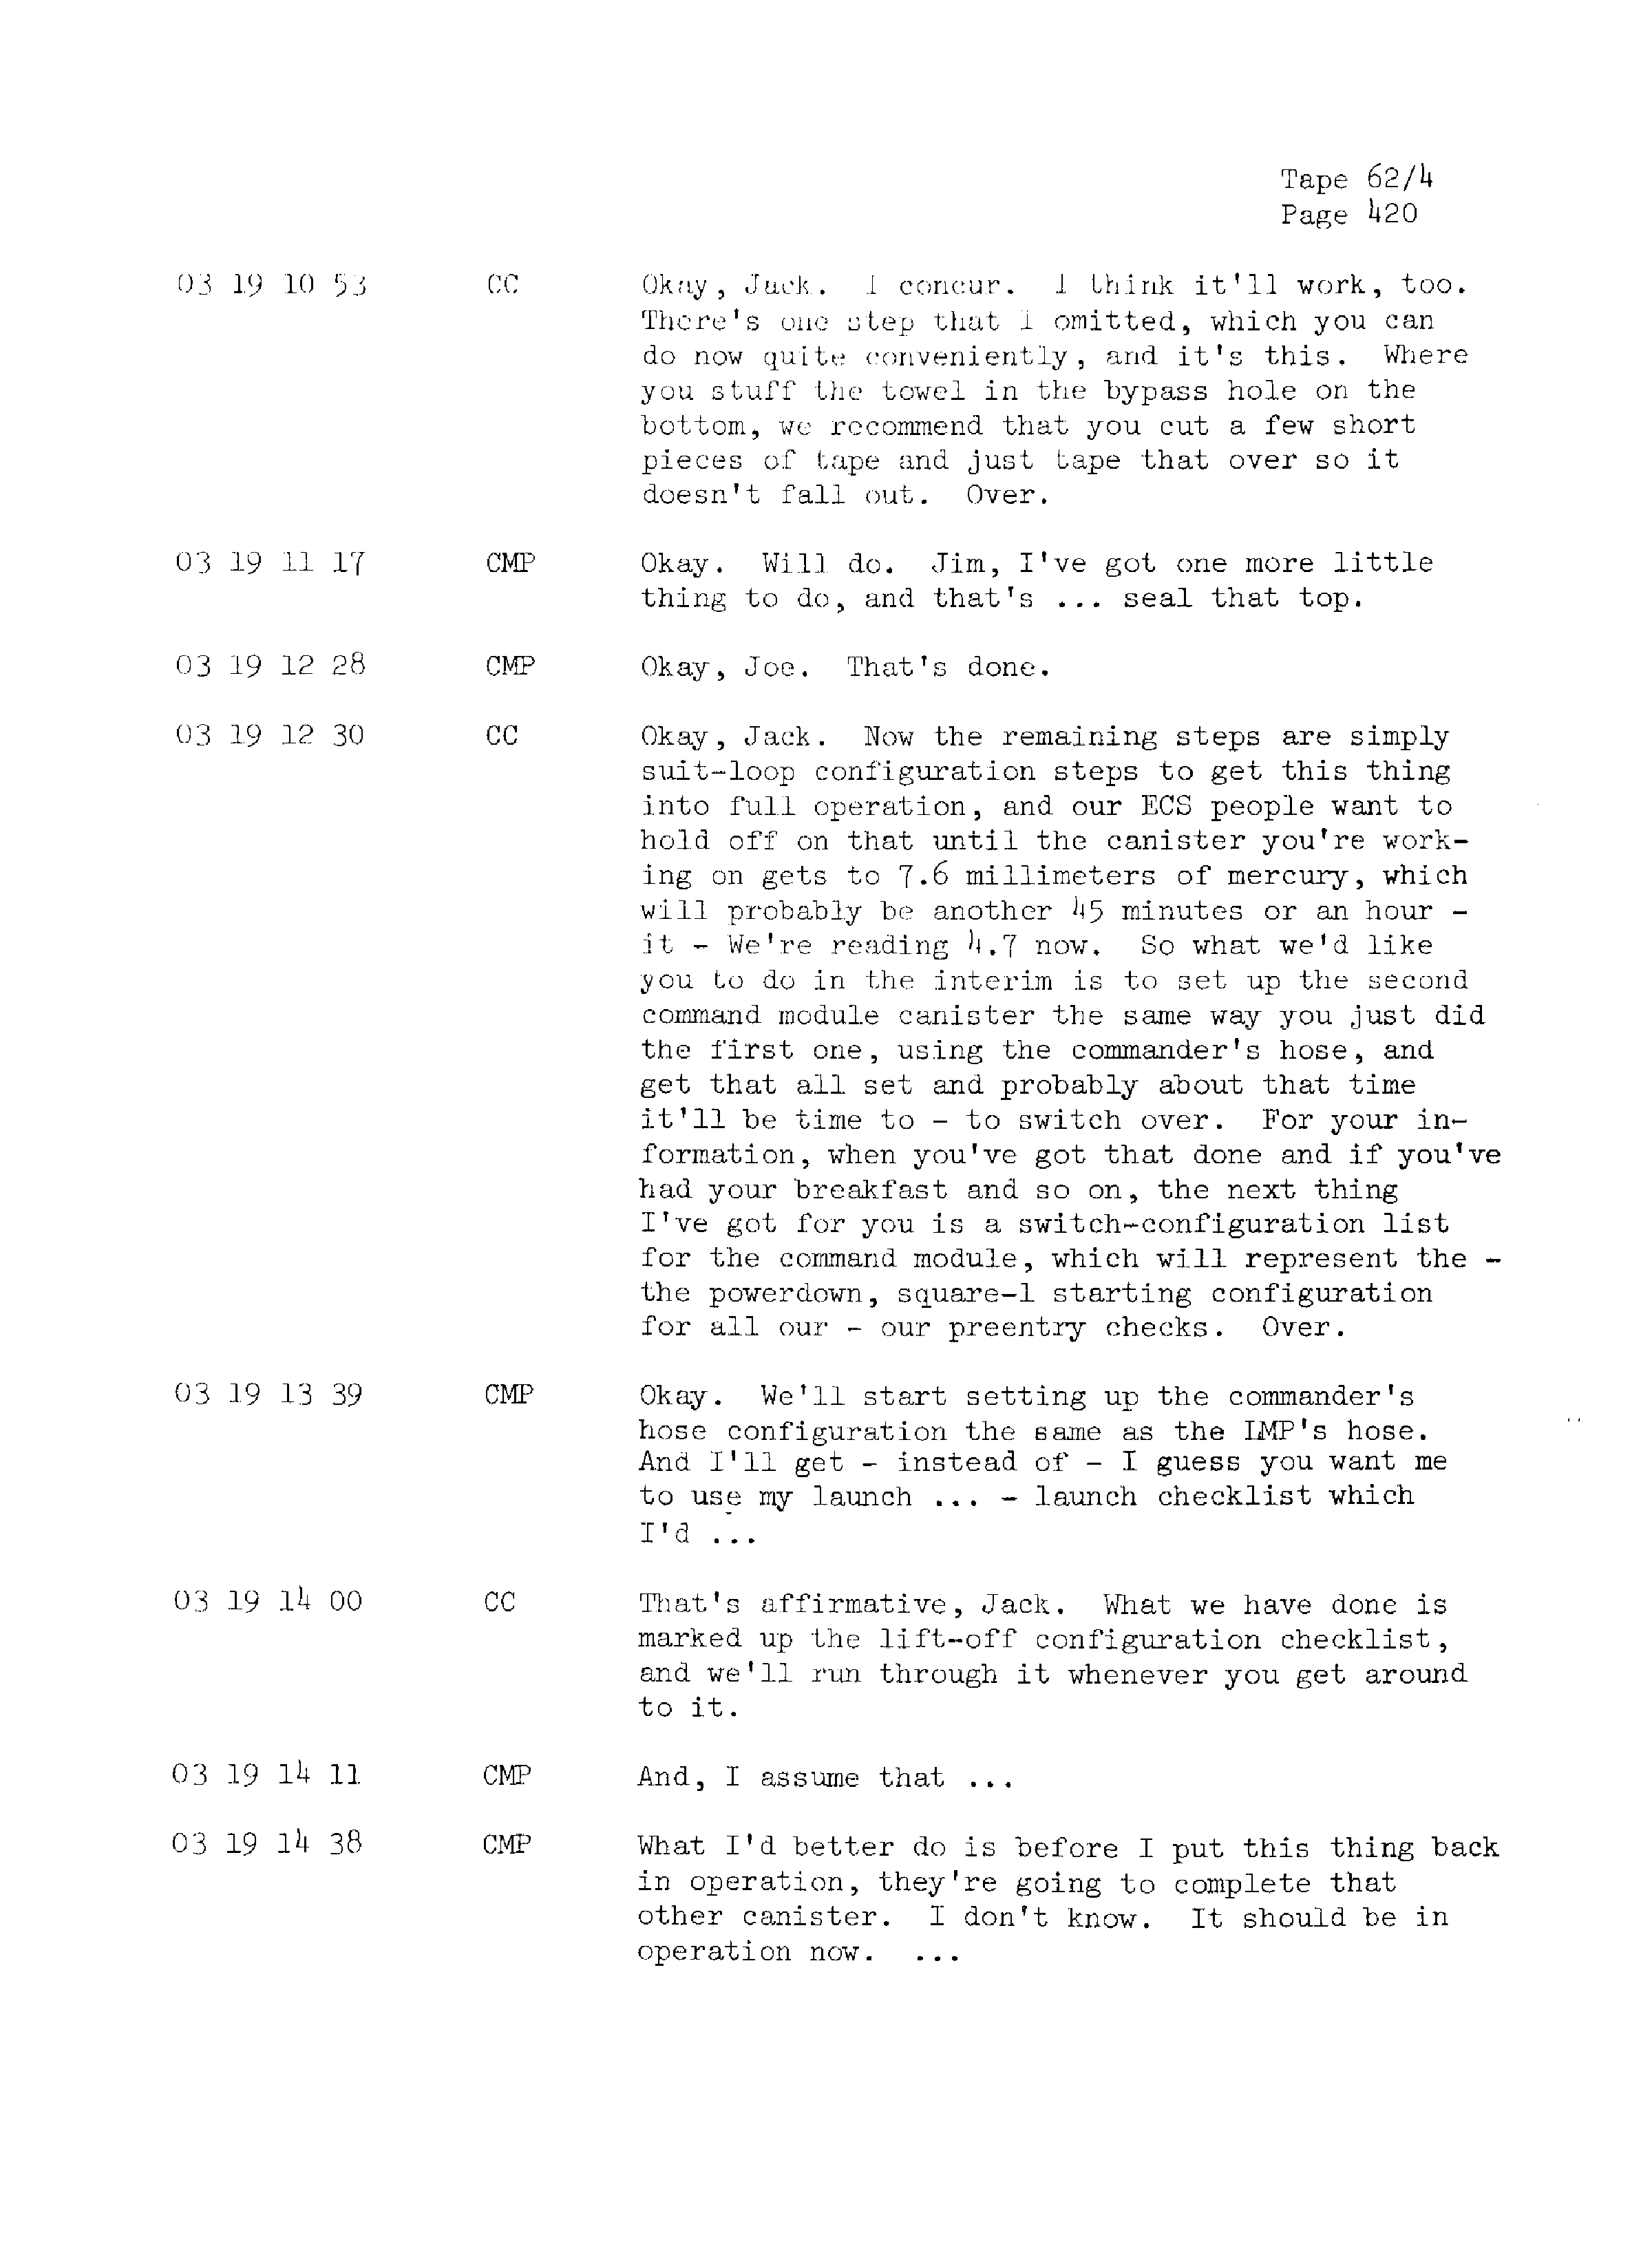 Page 427 of Apollo 13’s original transcript